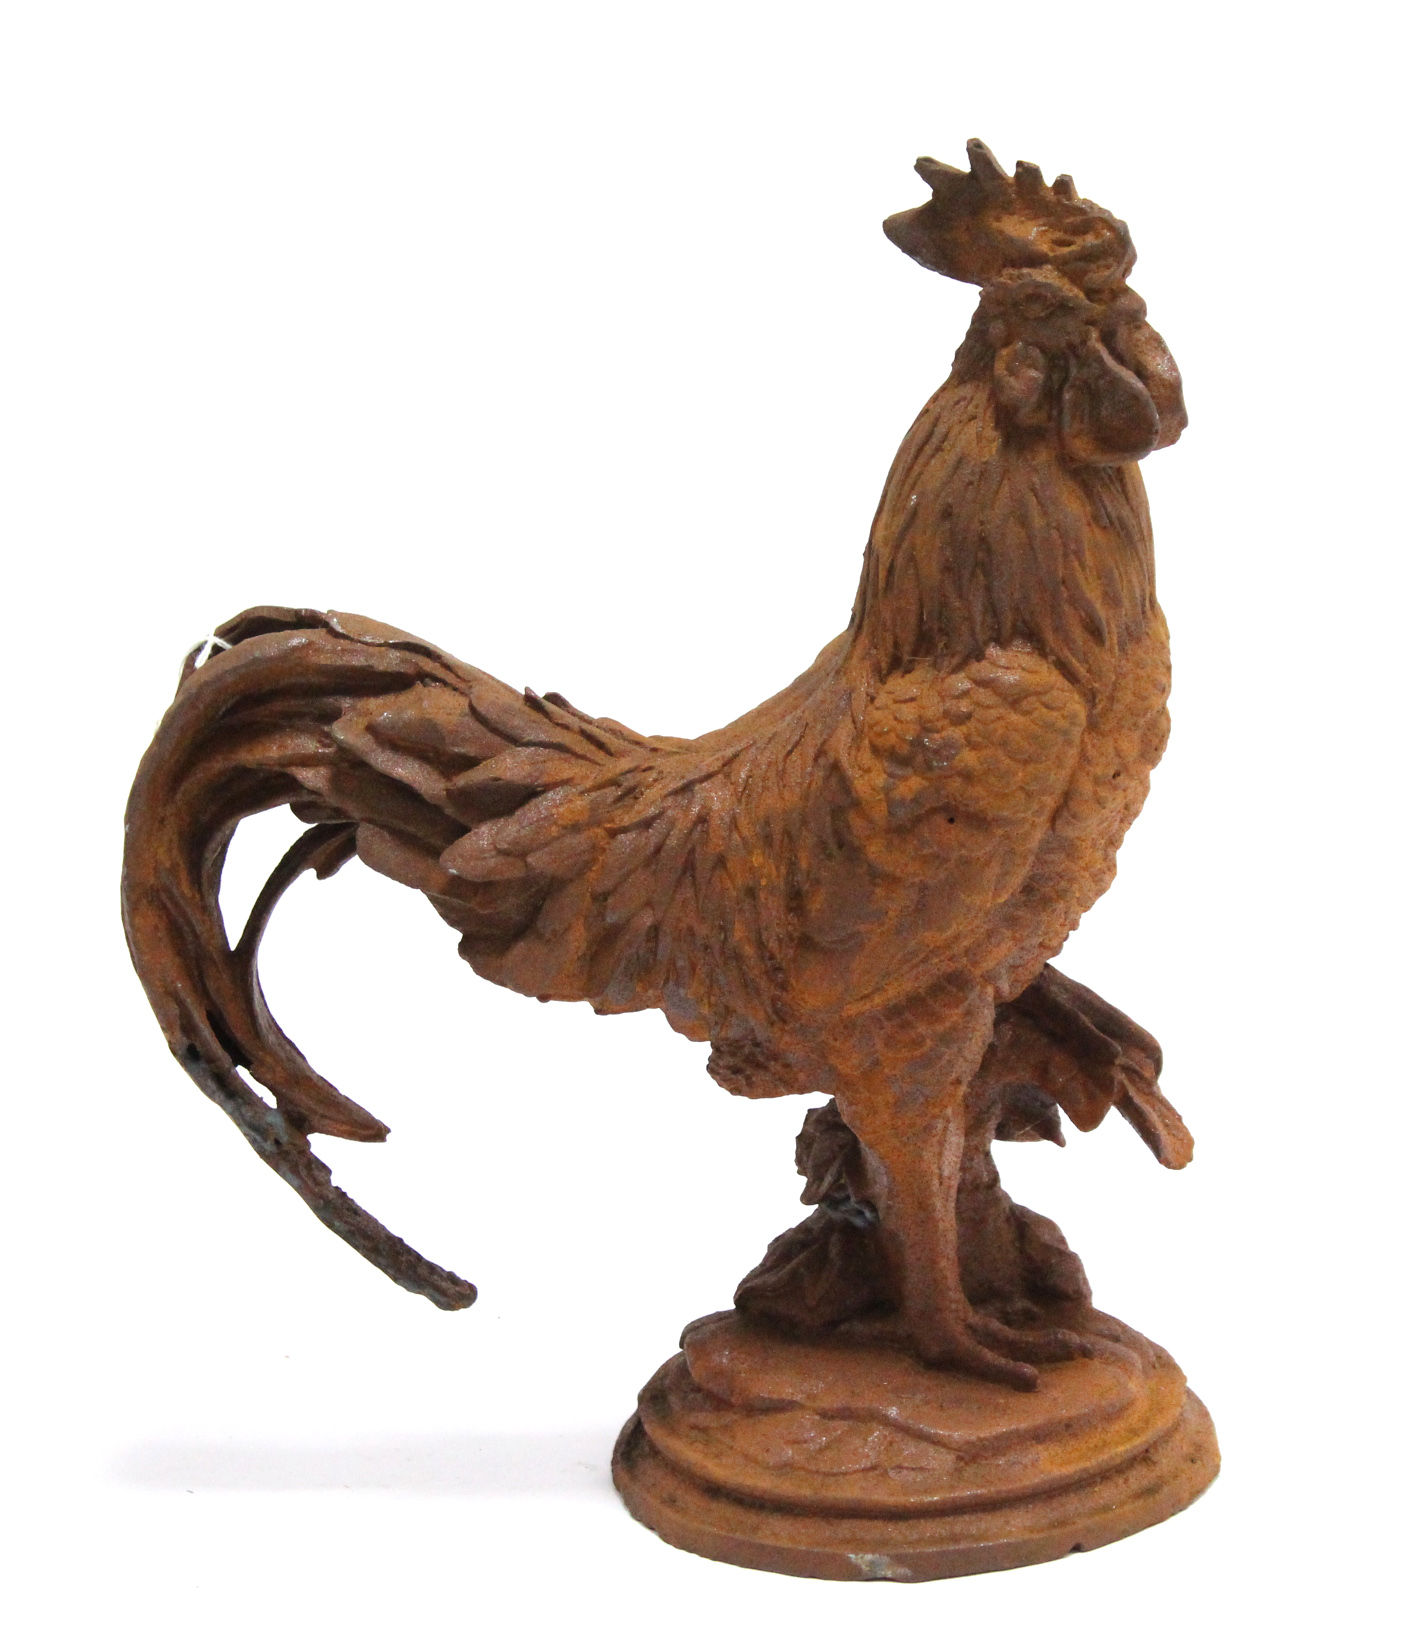 A modern cast-iron cockerel ornament, 16½” high.